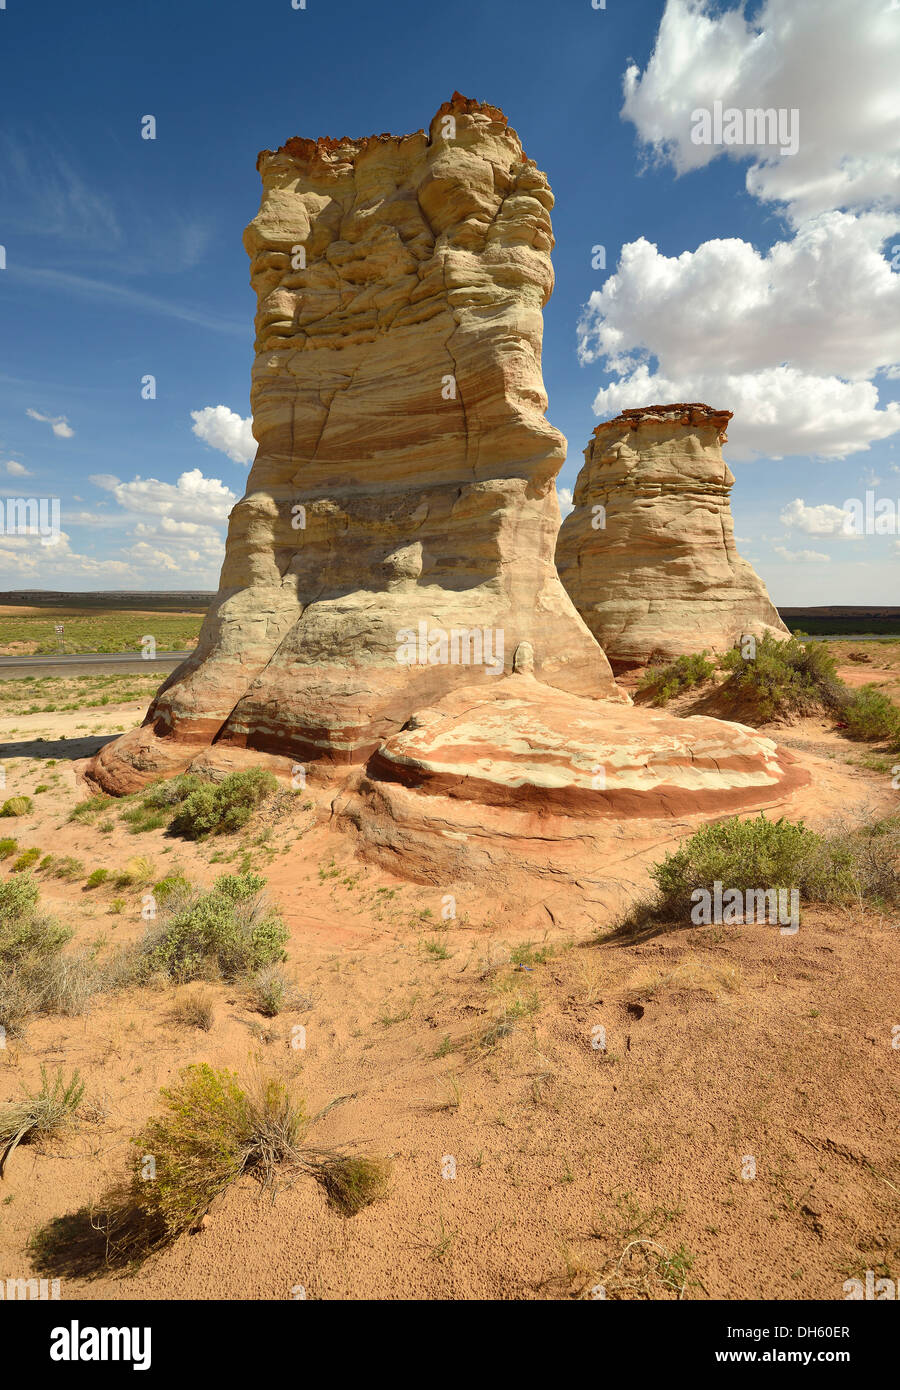 Piedi di elefante, un eroso hoodoos rock formazione scolorito da minerali, Tonalea, Navajo Nation Reservation, Arizona Foto Stock